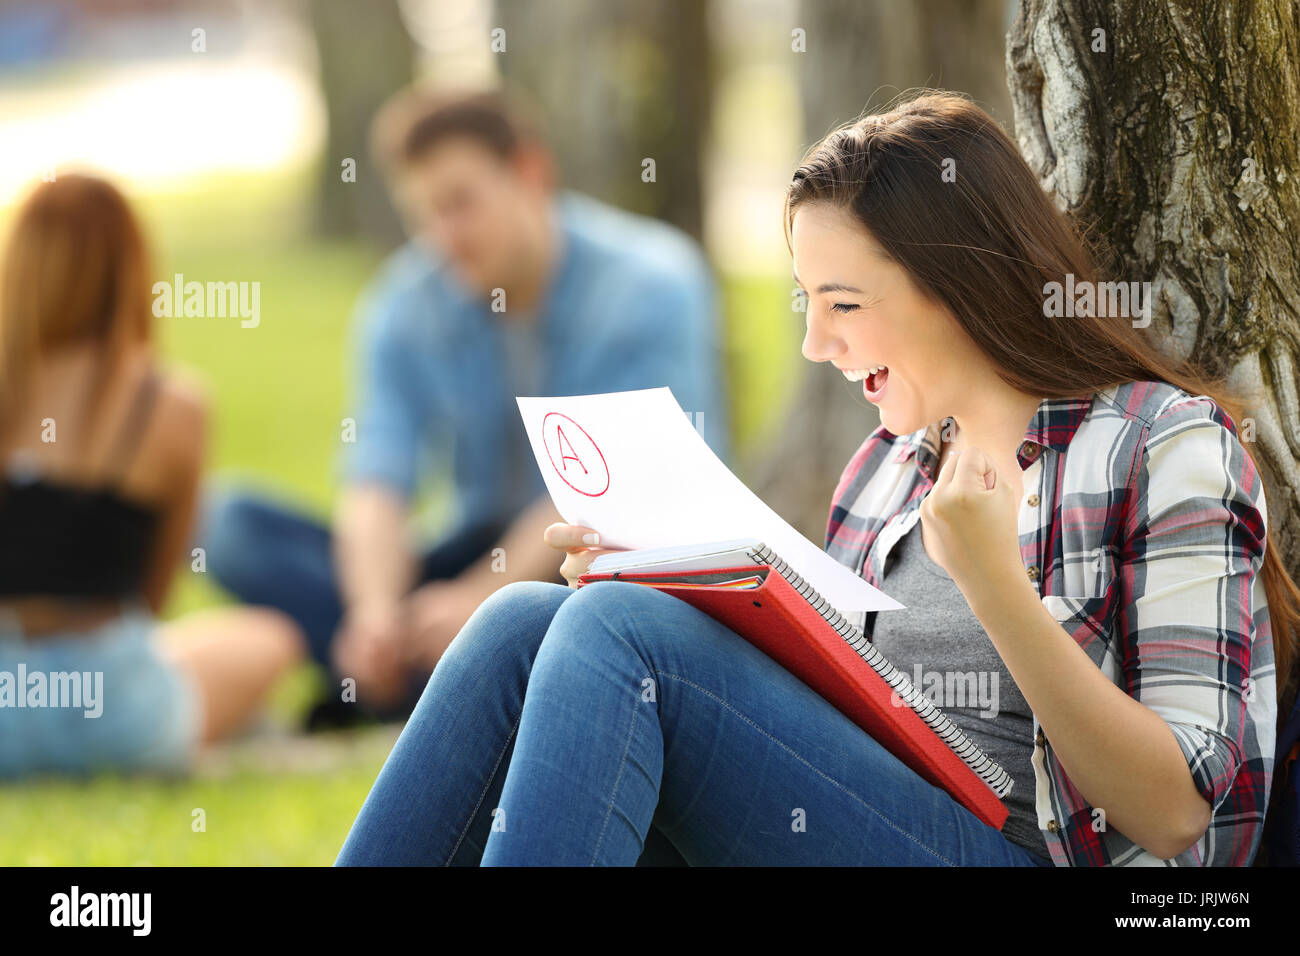 Studente eccitate controllando un esame approvato seduta sul prato in un parco con persone non focalizzato in background Foto Stock